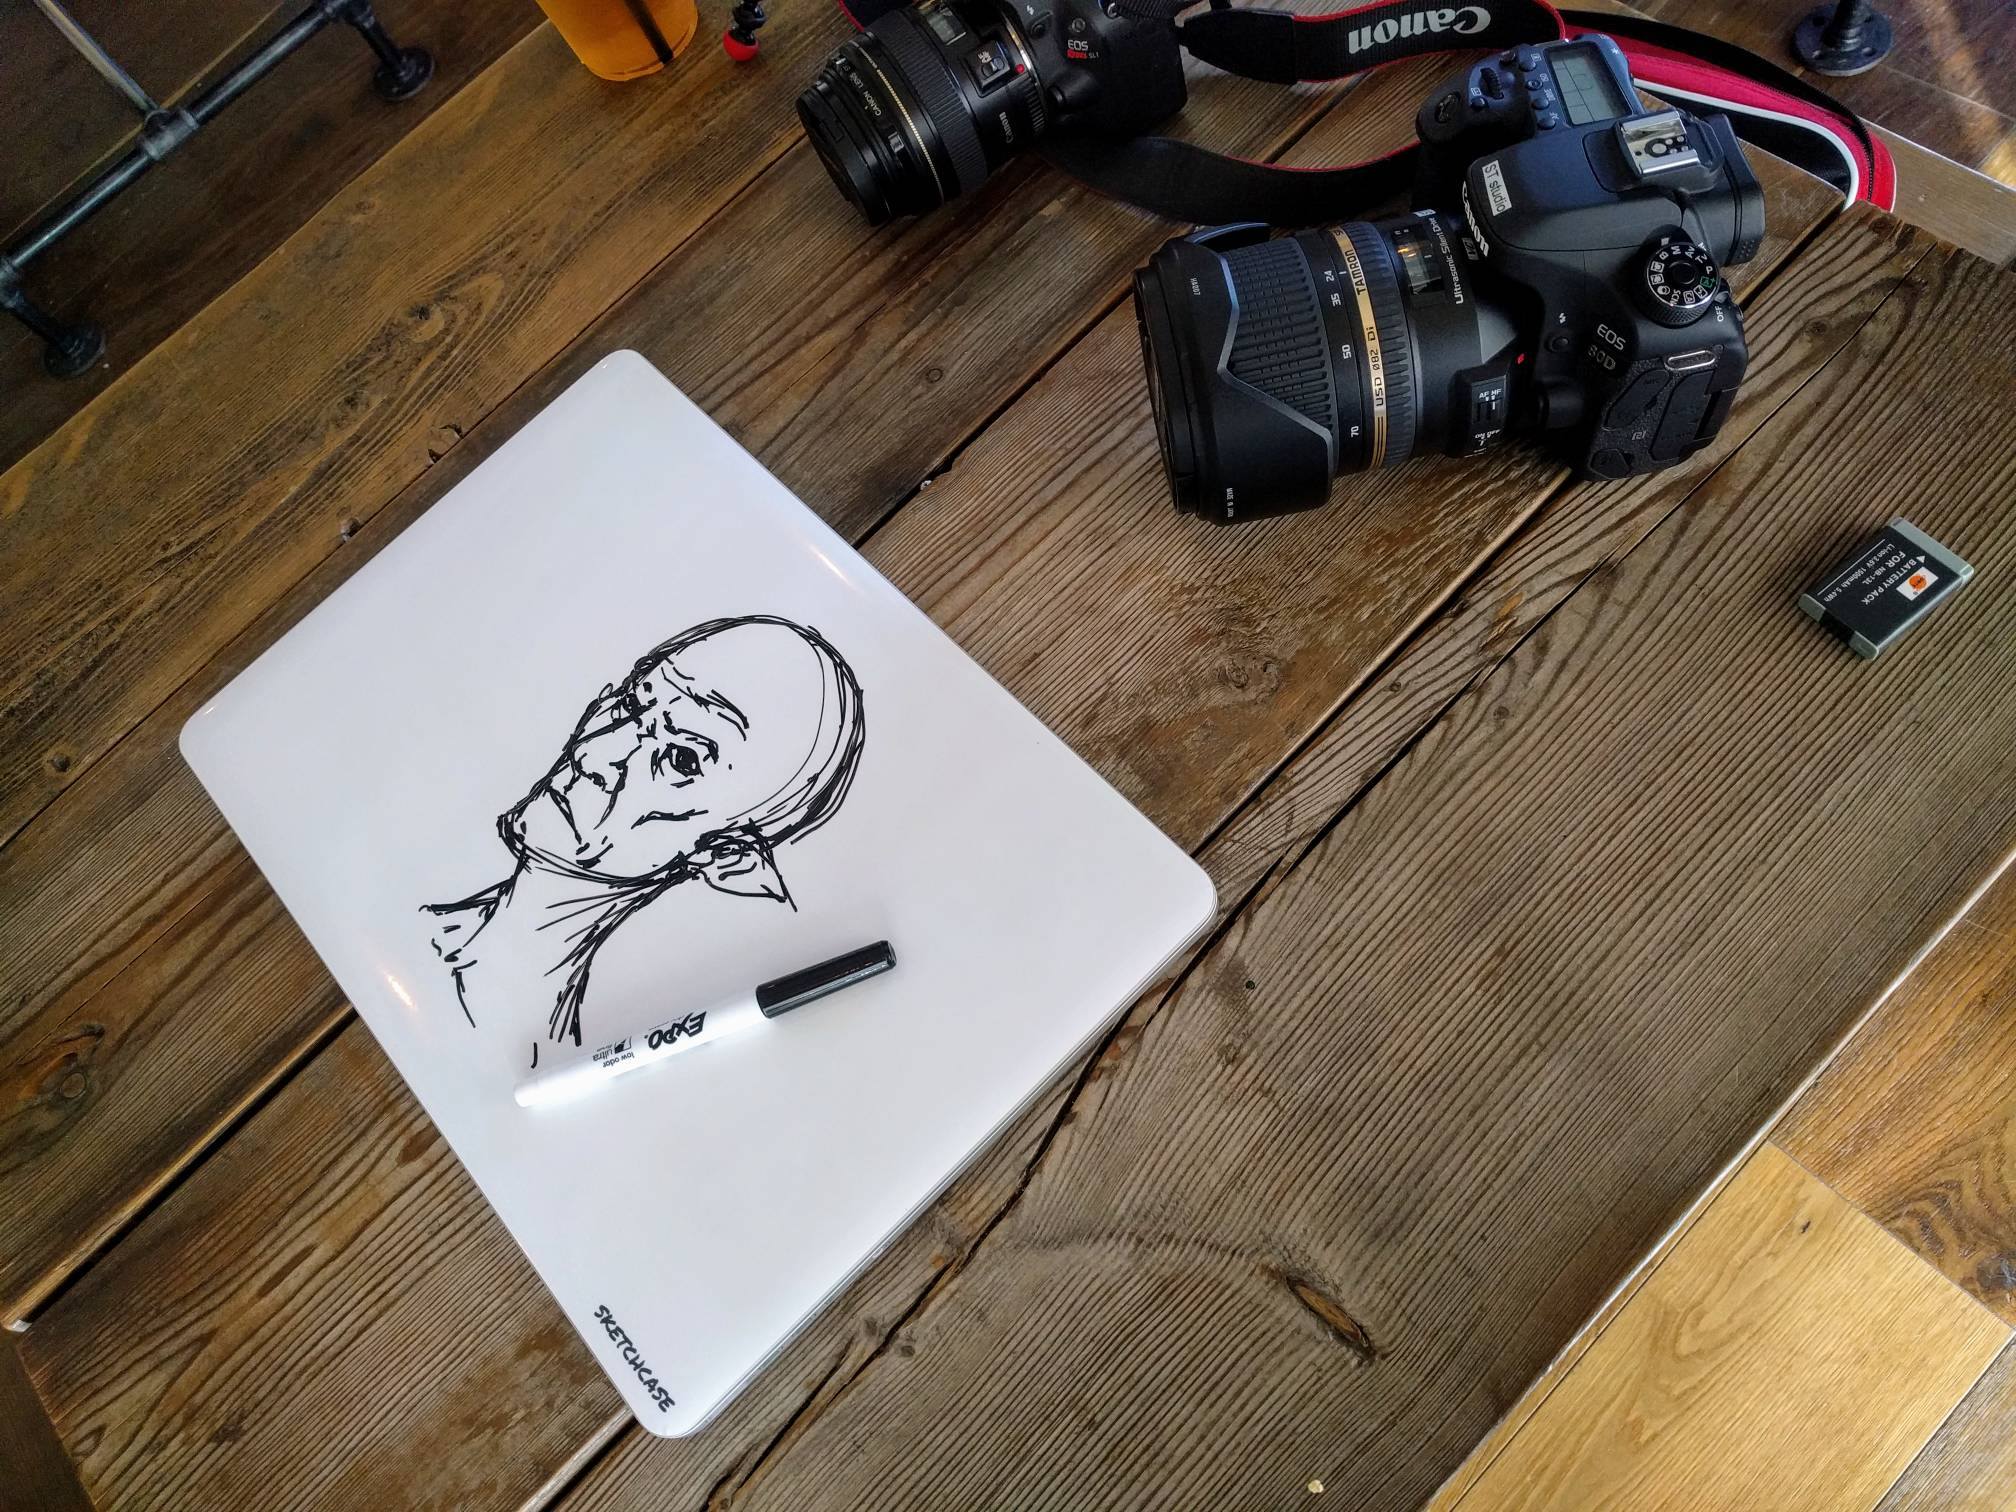 Transforma tu portátil en un tablero borrable con Sketchcase